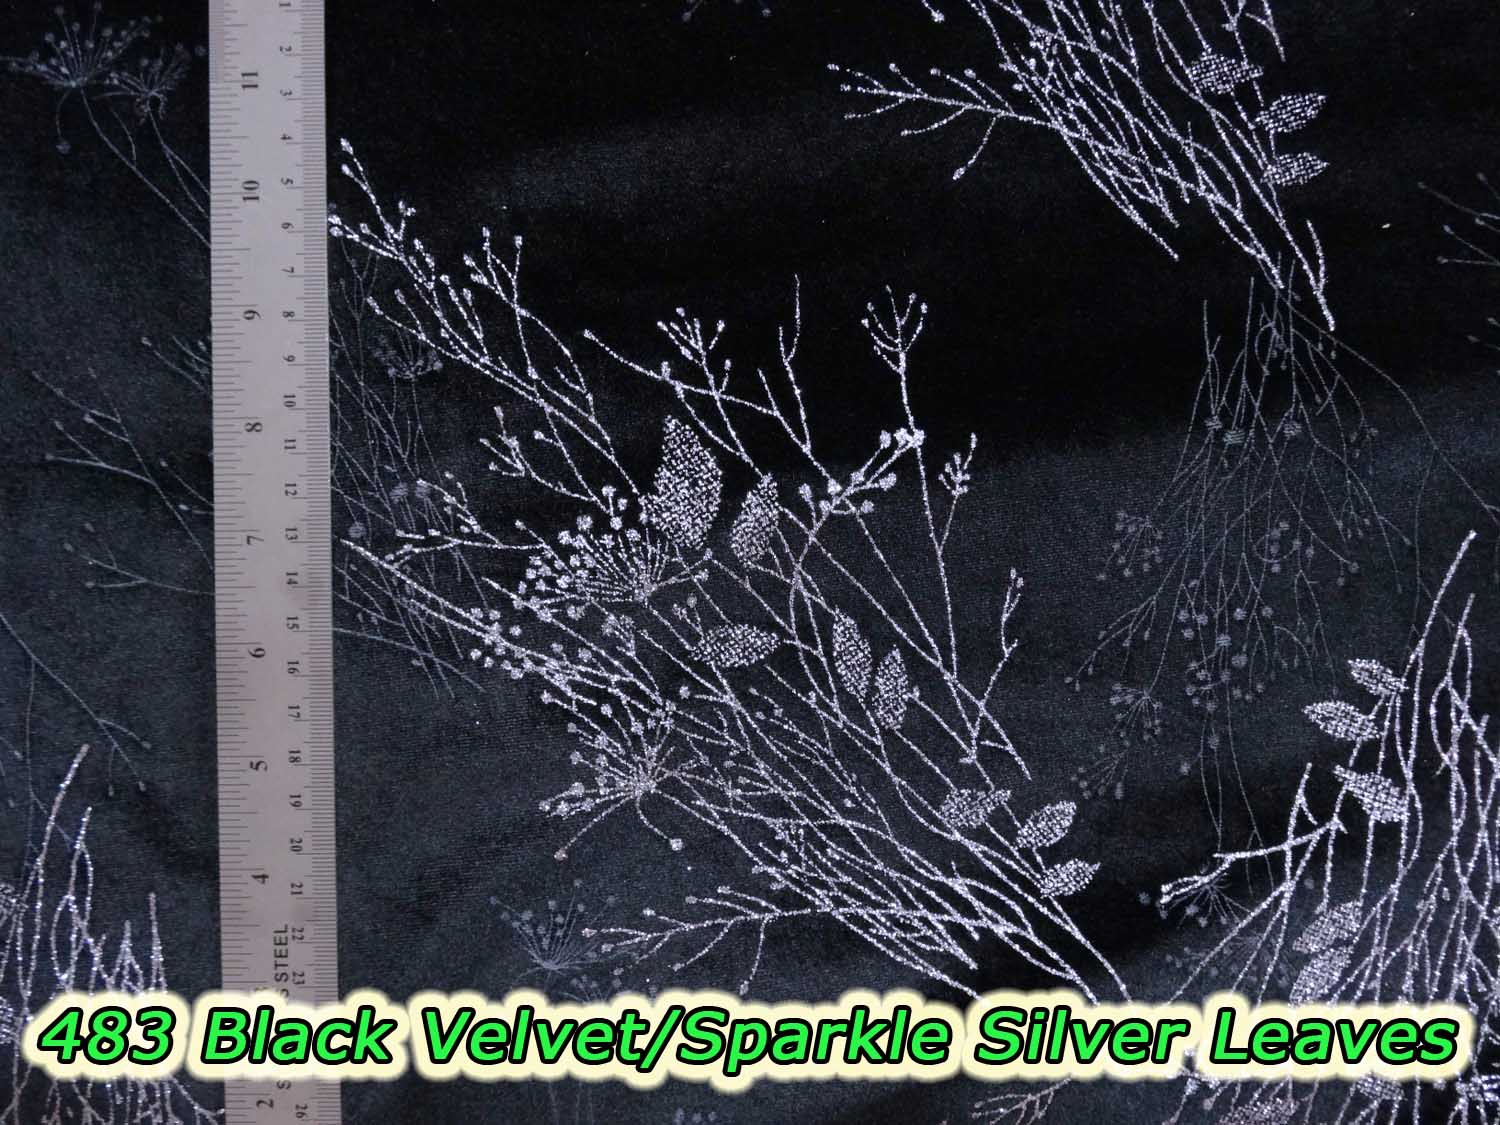 483 Black Velvet with Sparkle Silver Leaves